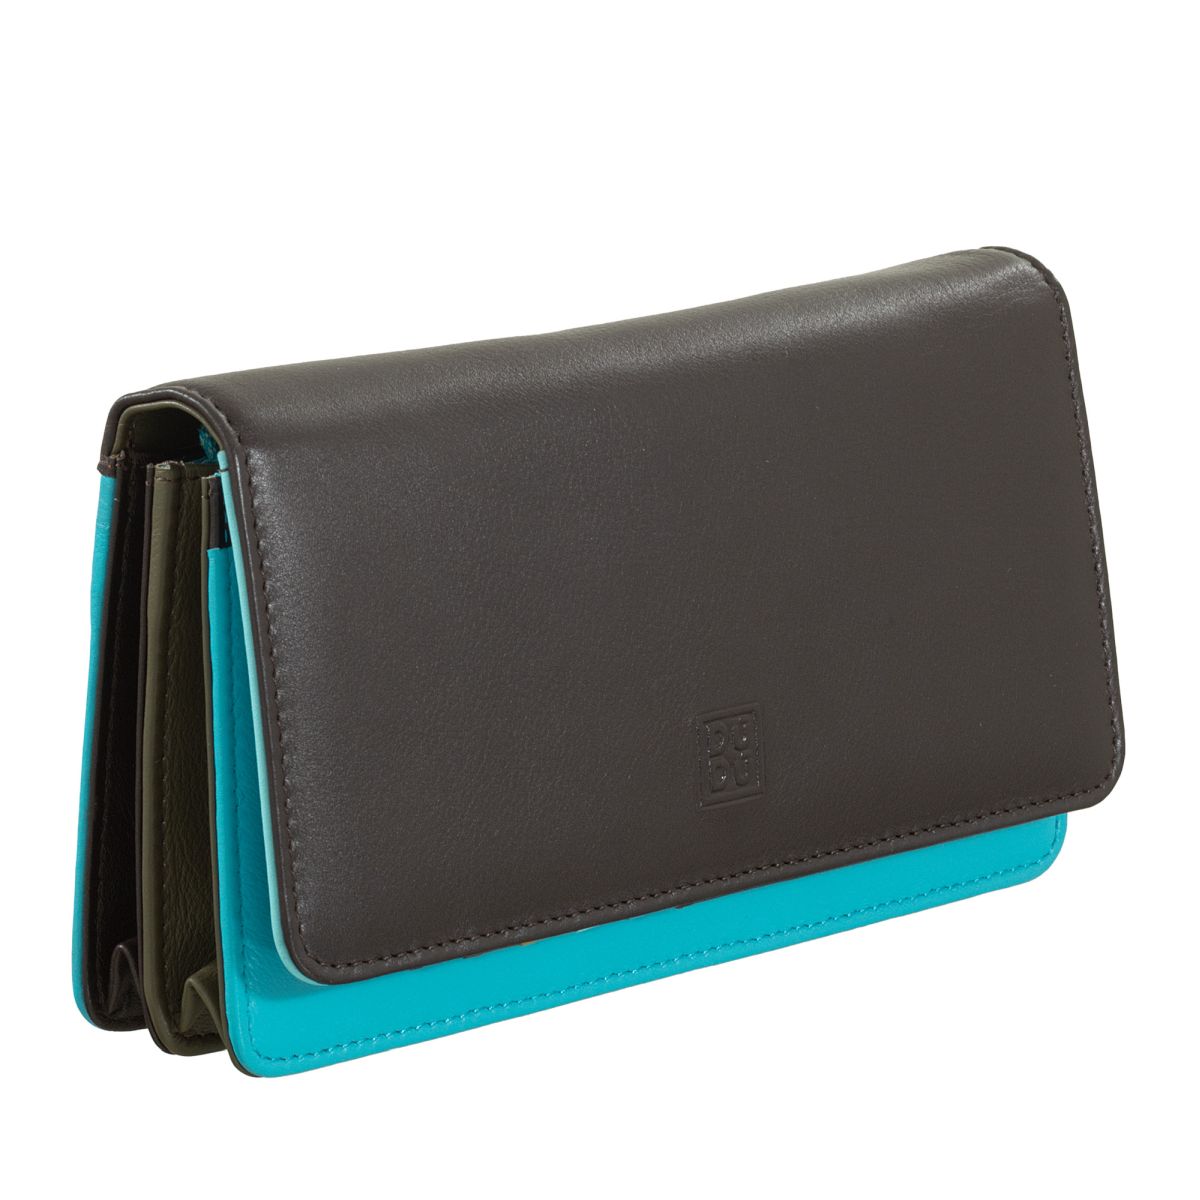 DuDu Ladies leather multi color wallet - Dark Brown